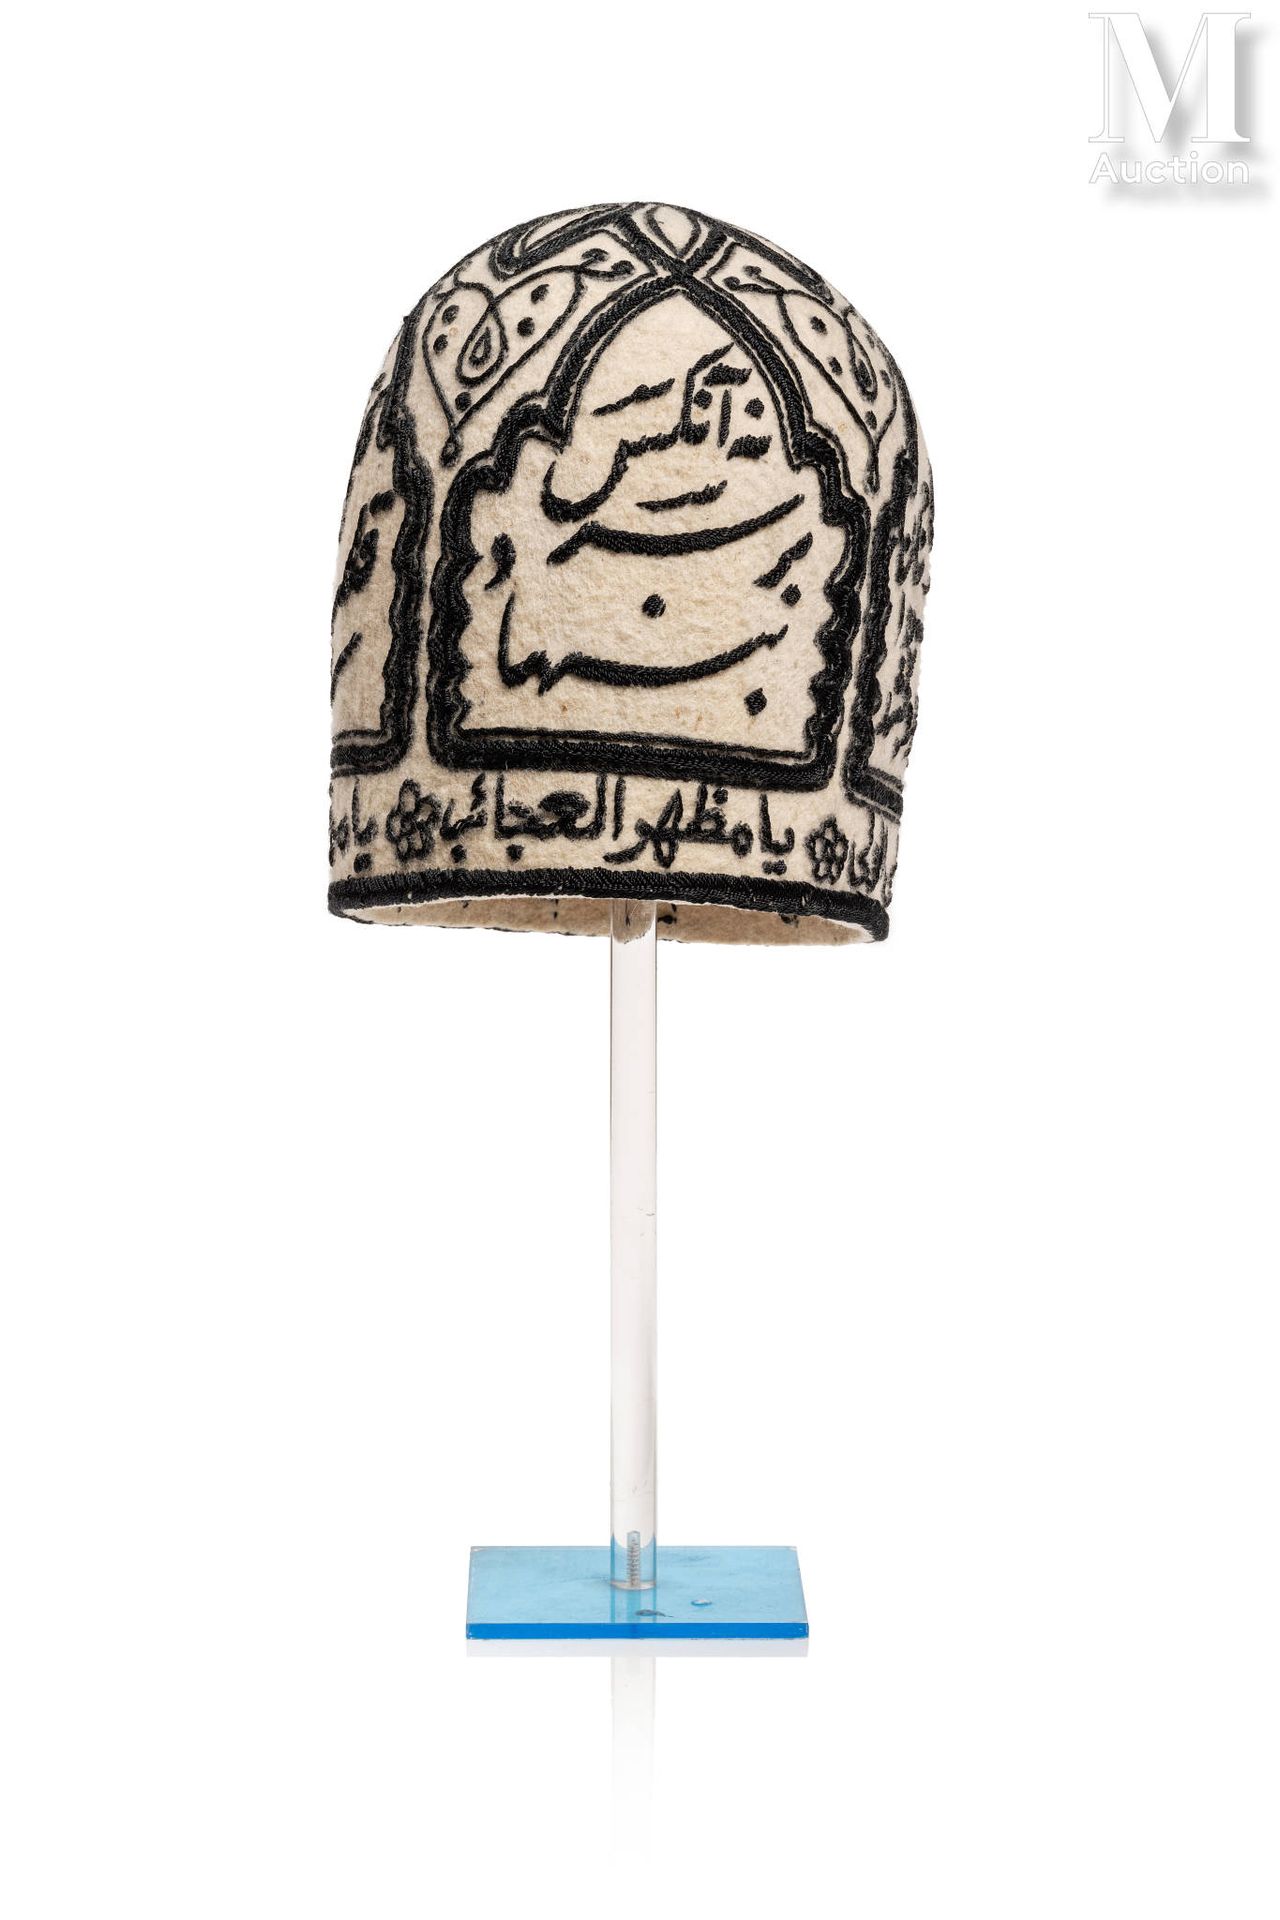 Bonnet de Derviche Iran

Aus Wolle, mit schwarzem Filz bestickt, mit vier mehrla&hellip;